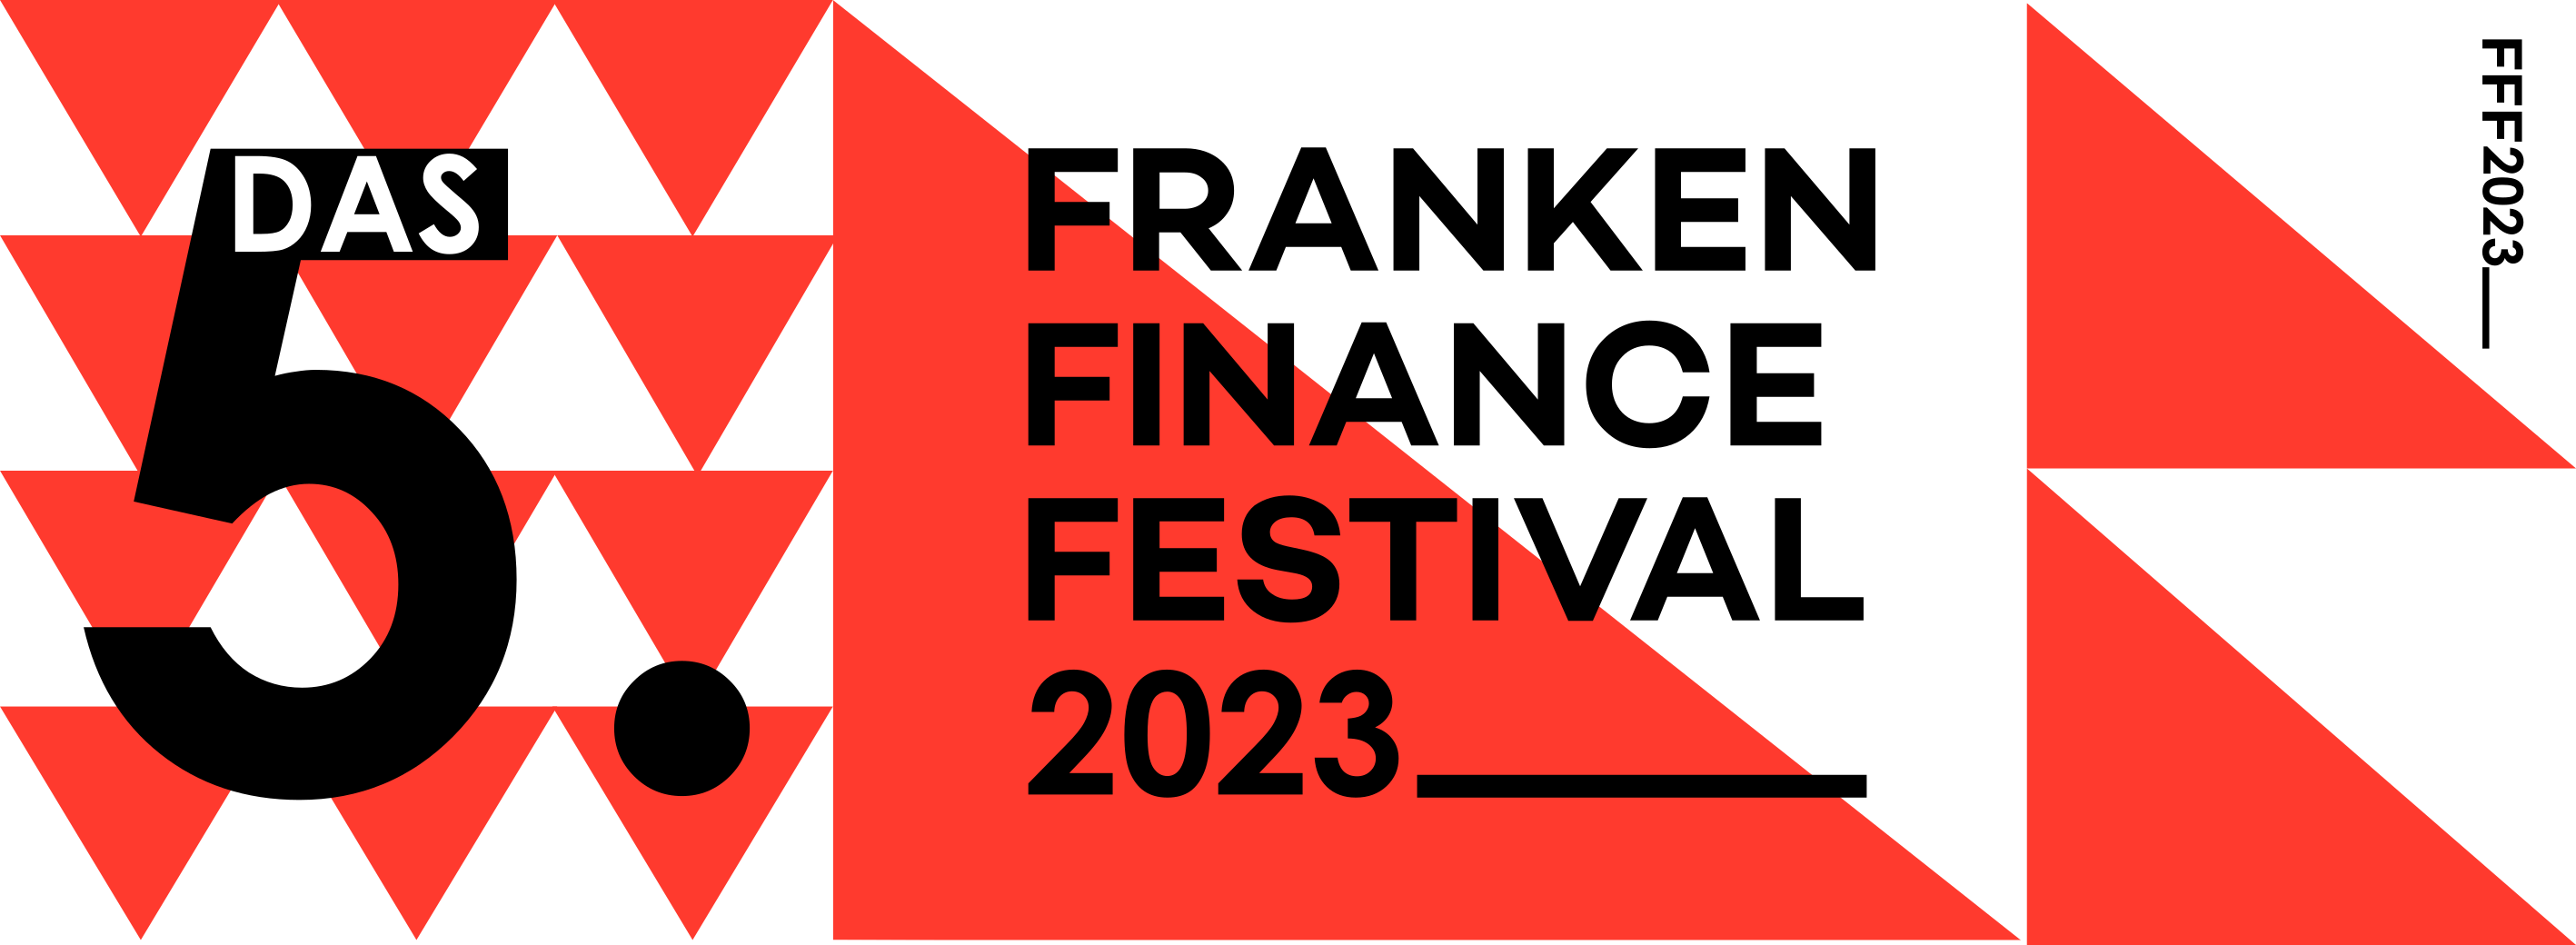 Franken Finance Festival 2023